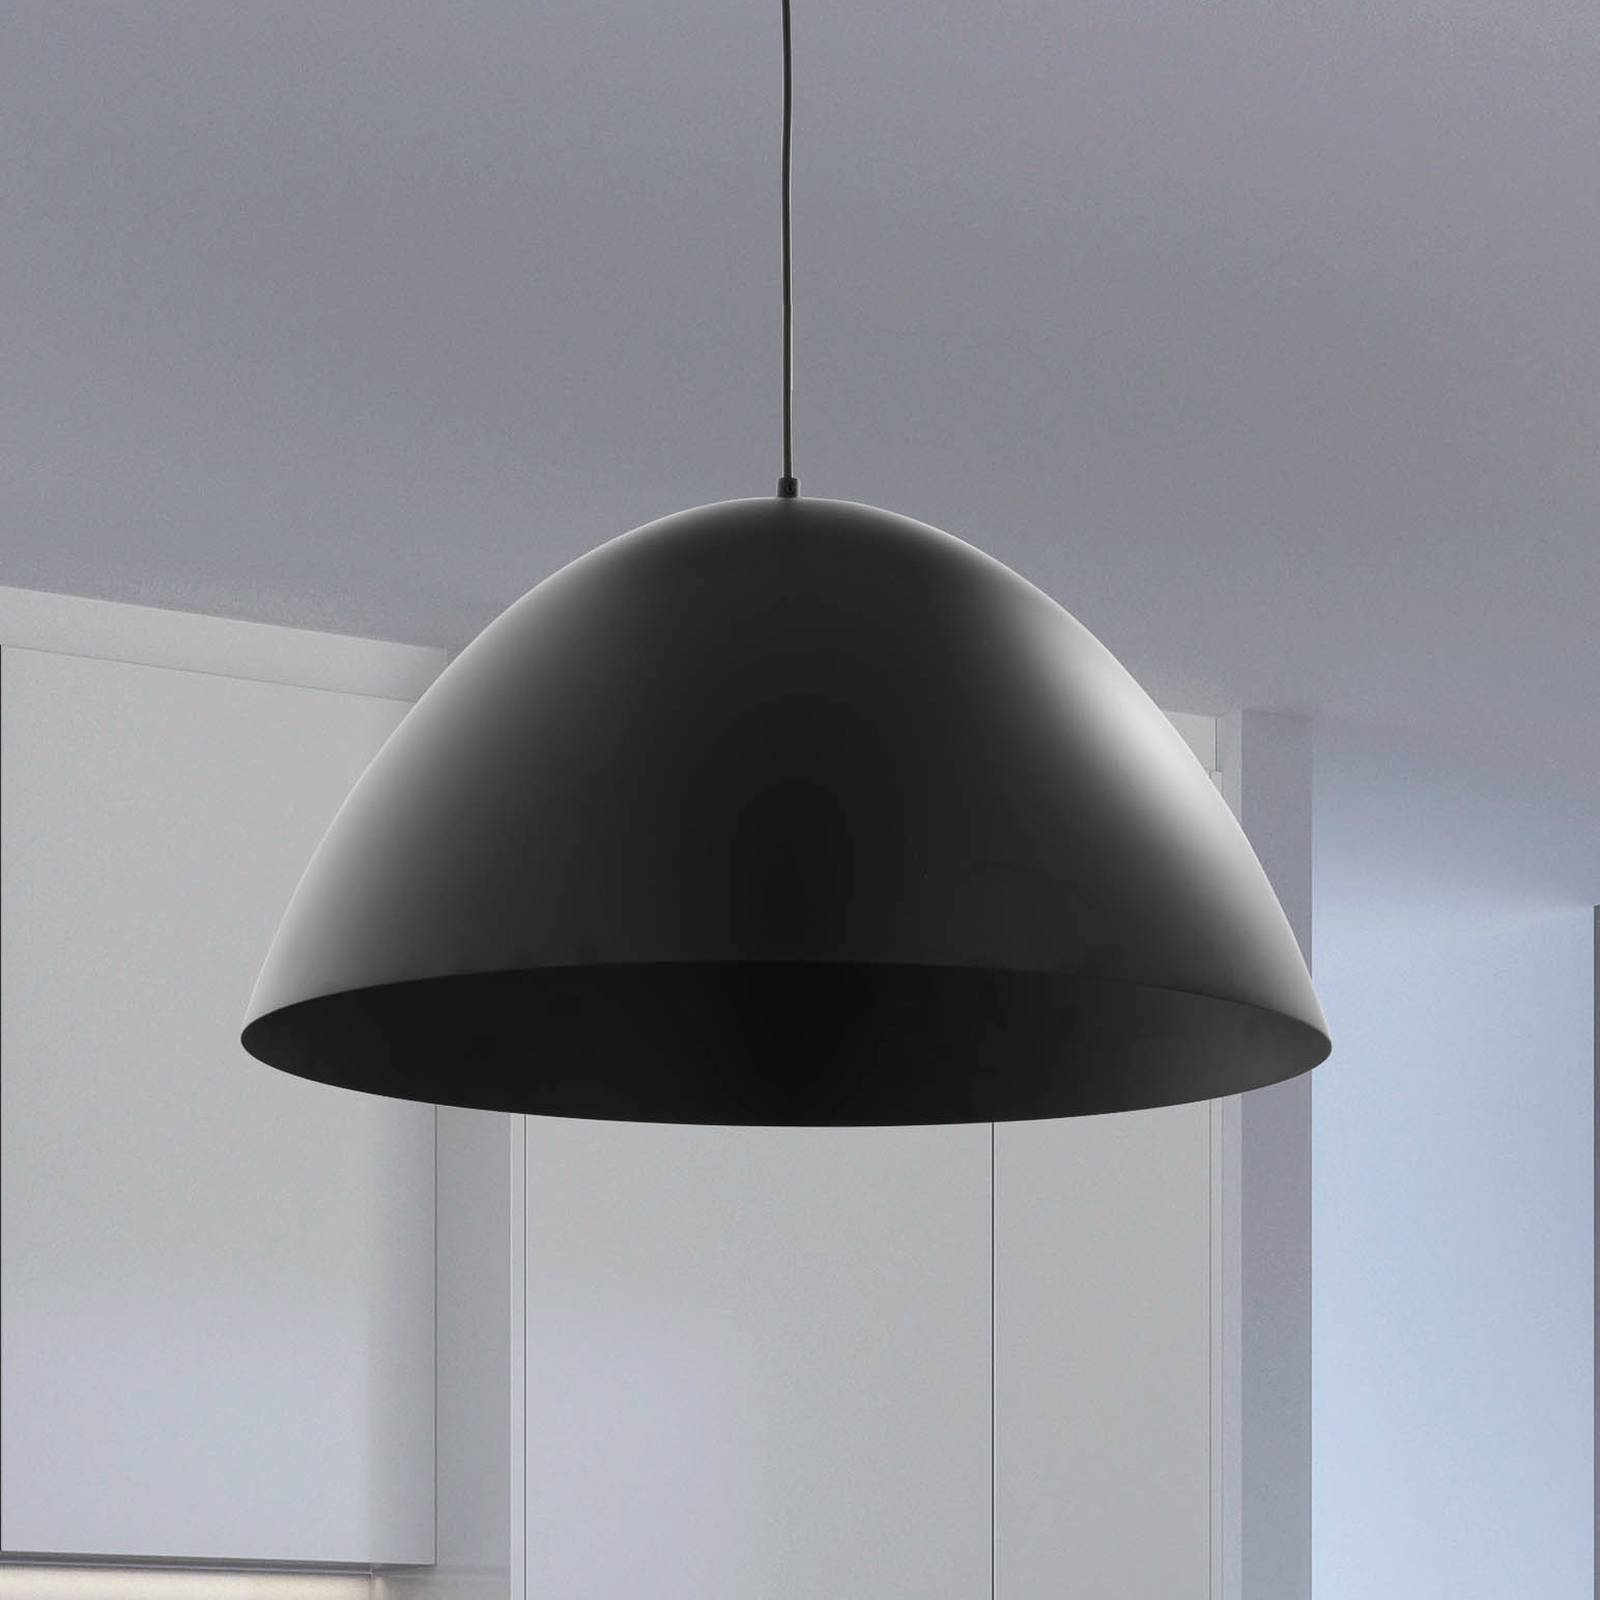 Hanglamp Faro met metalen kap Ø 50 cm zwart